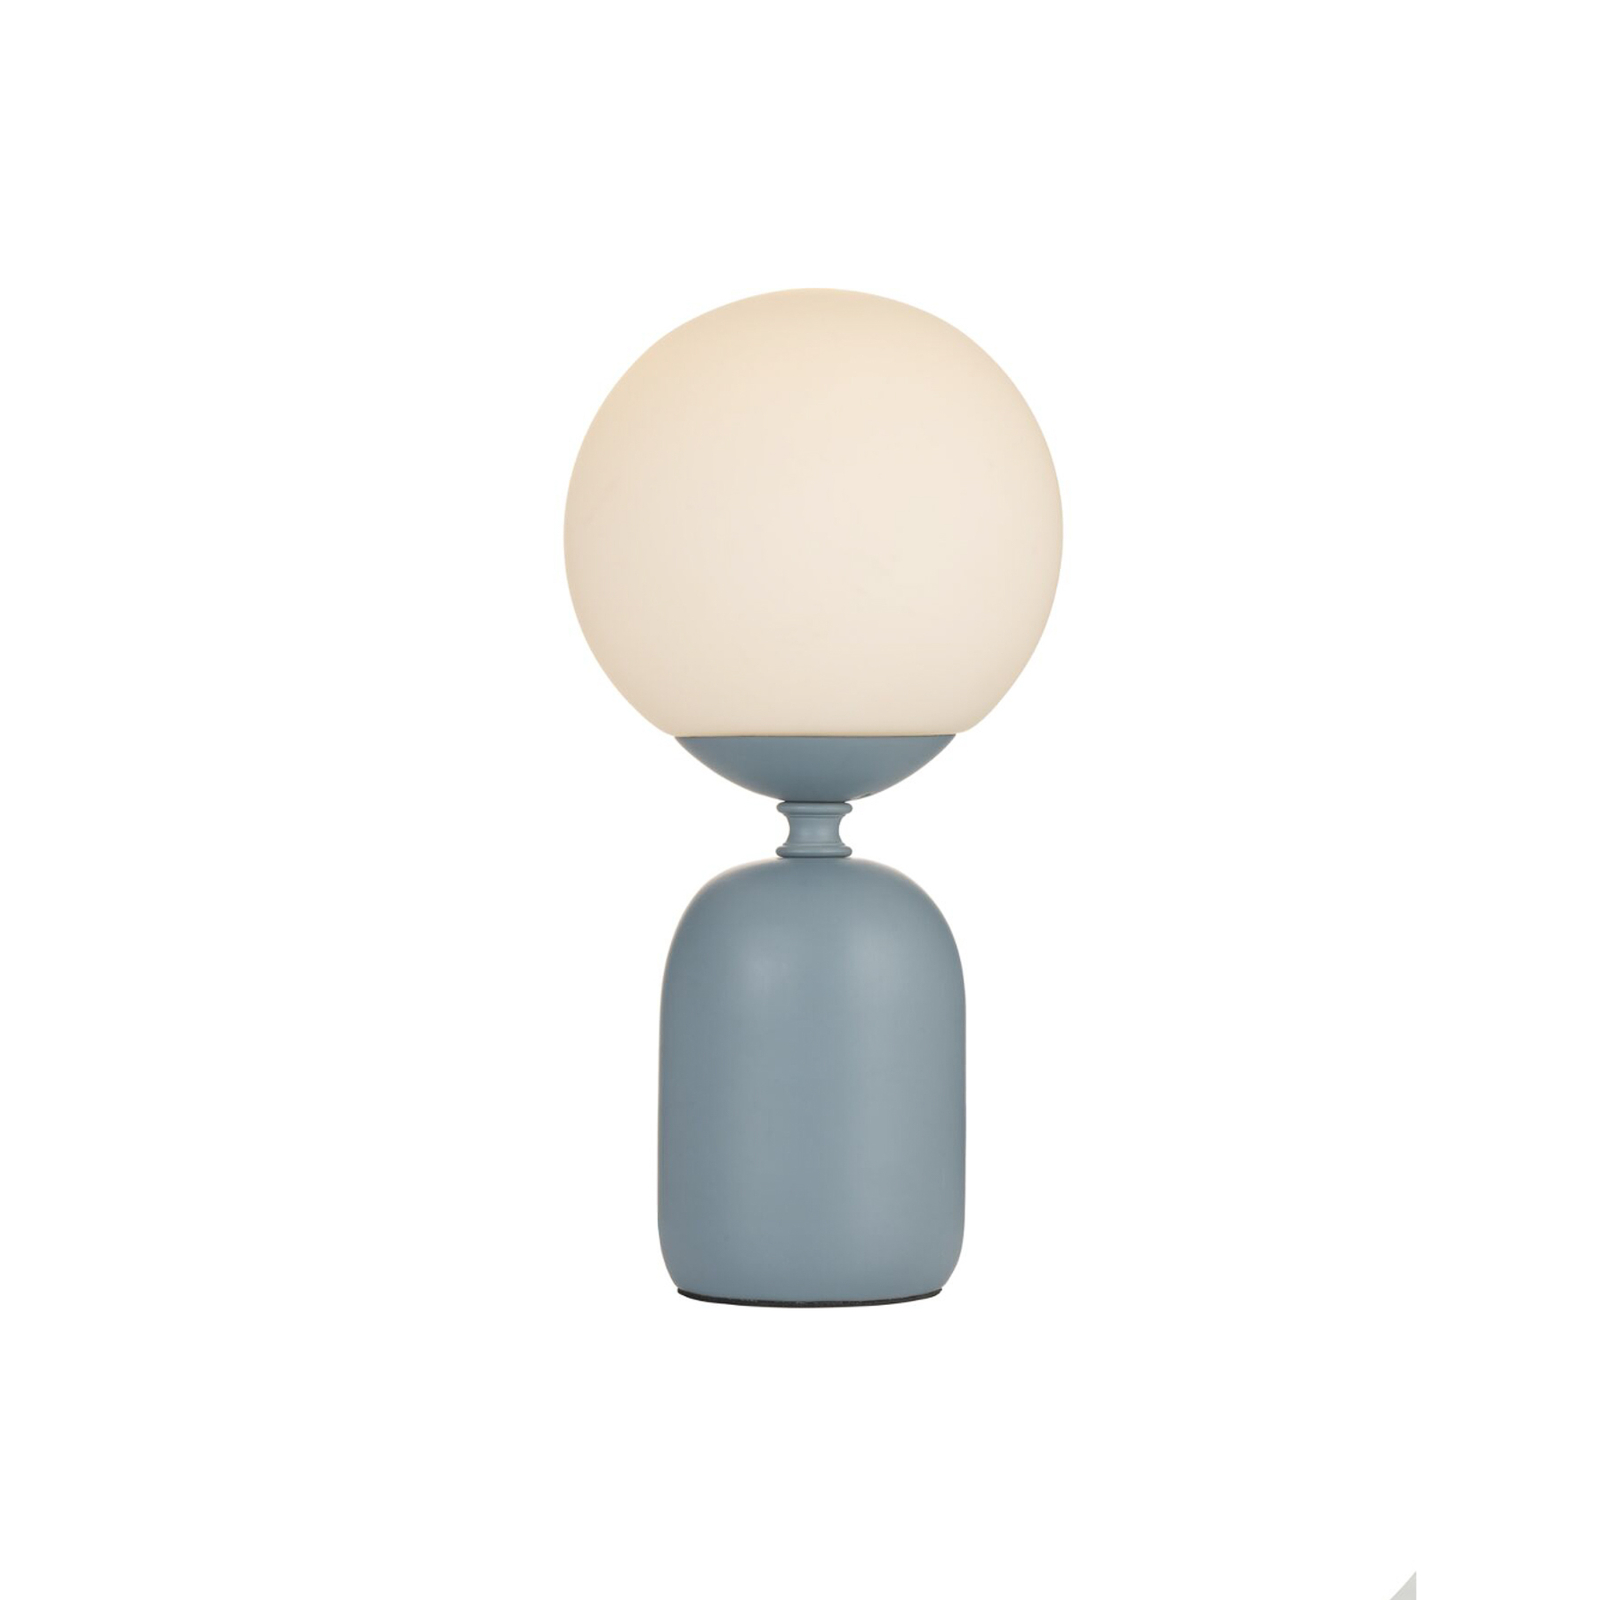 Pauleen Glowing Charm bordslampa, keramikfot blå